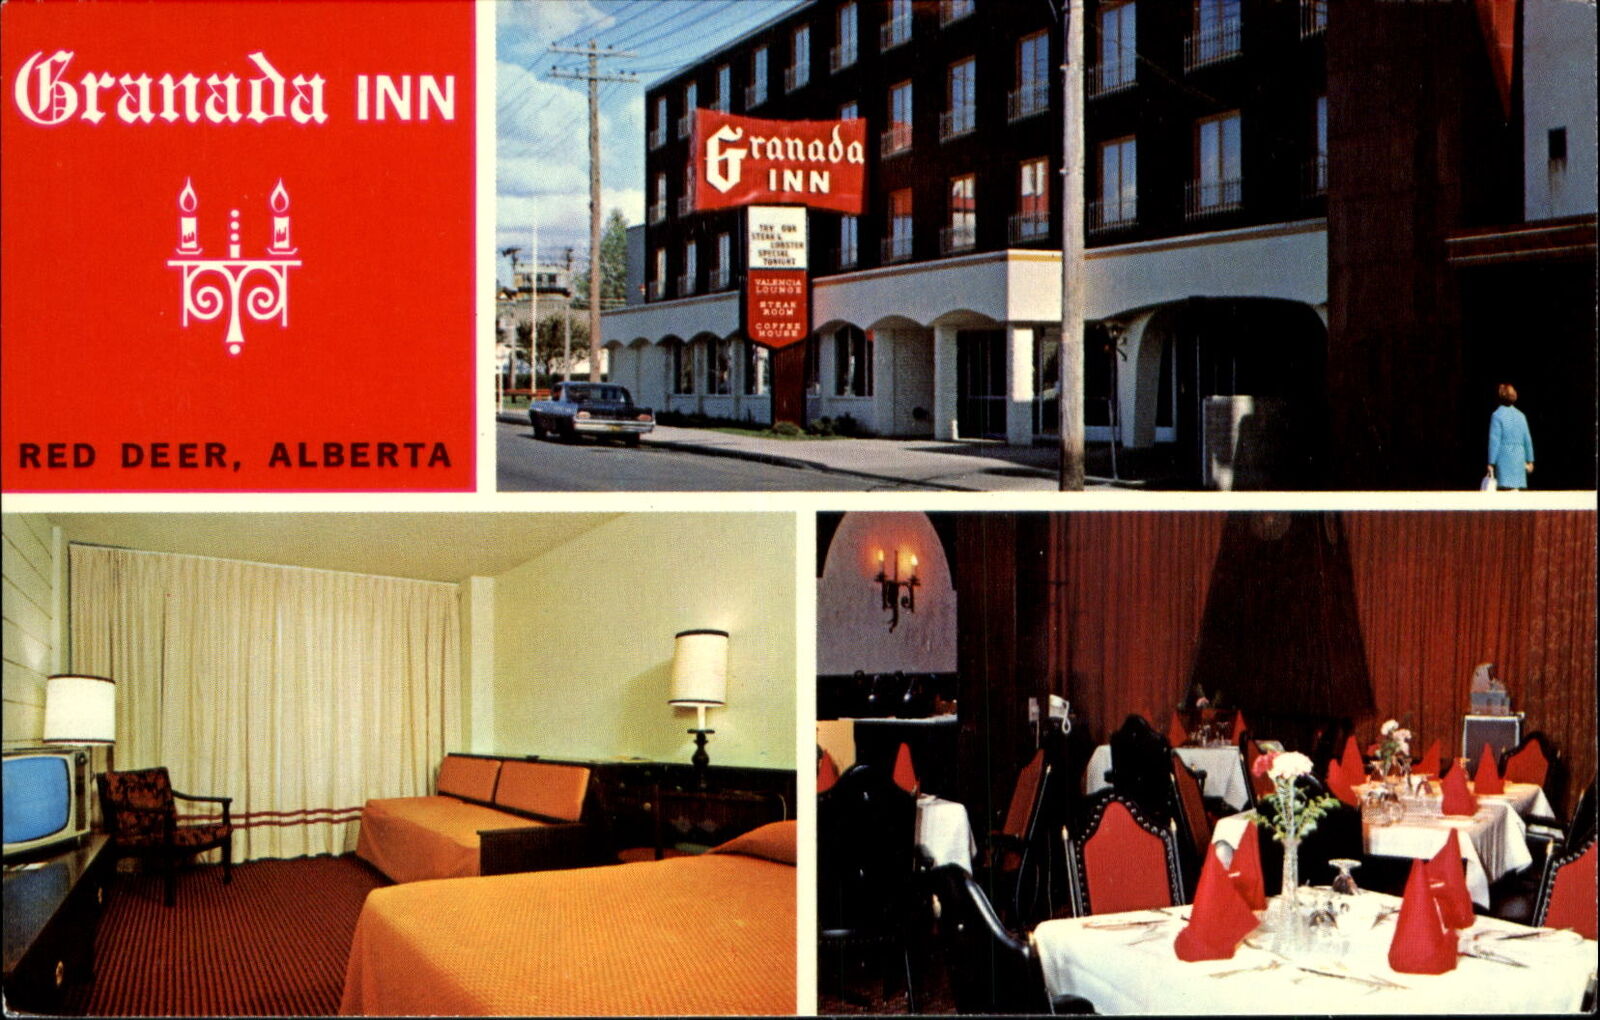 Granada Inn Red Deer Alberta Canada ~ restaurant & room interior TV on